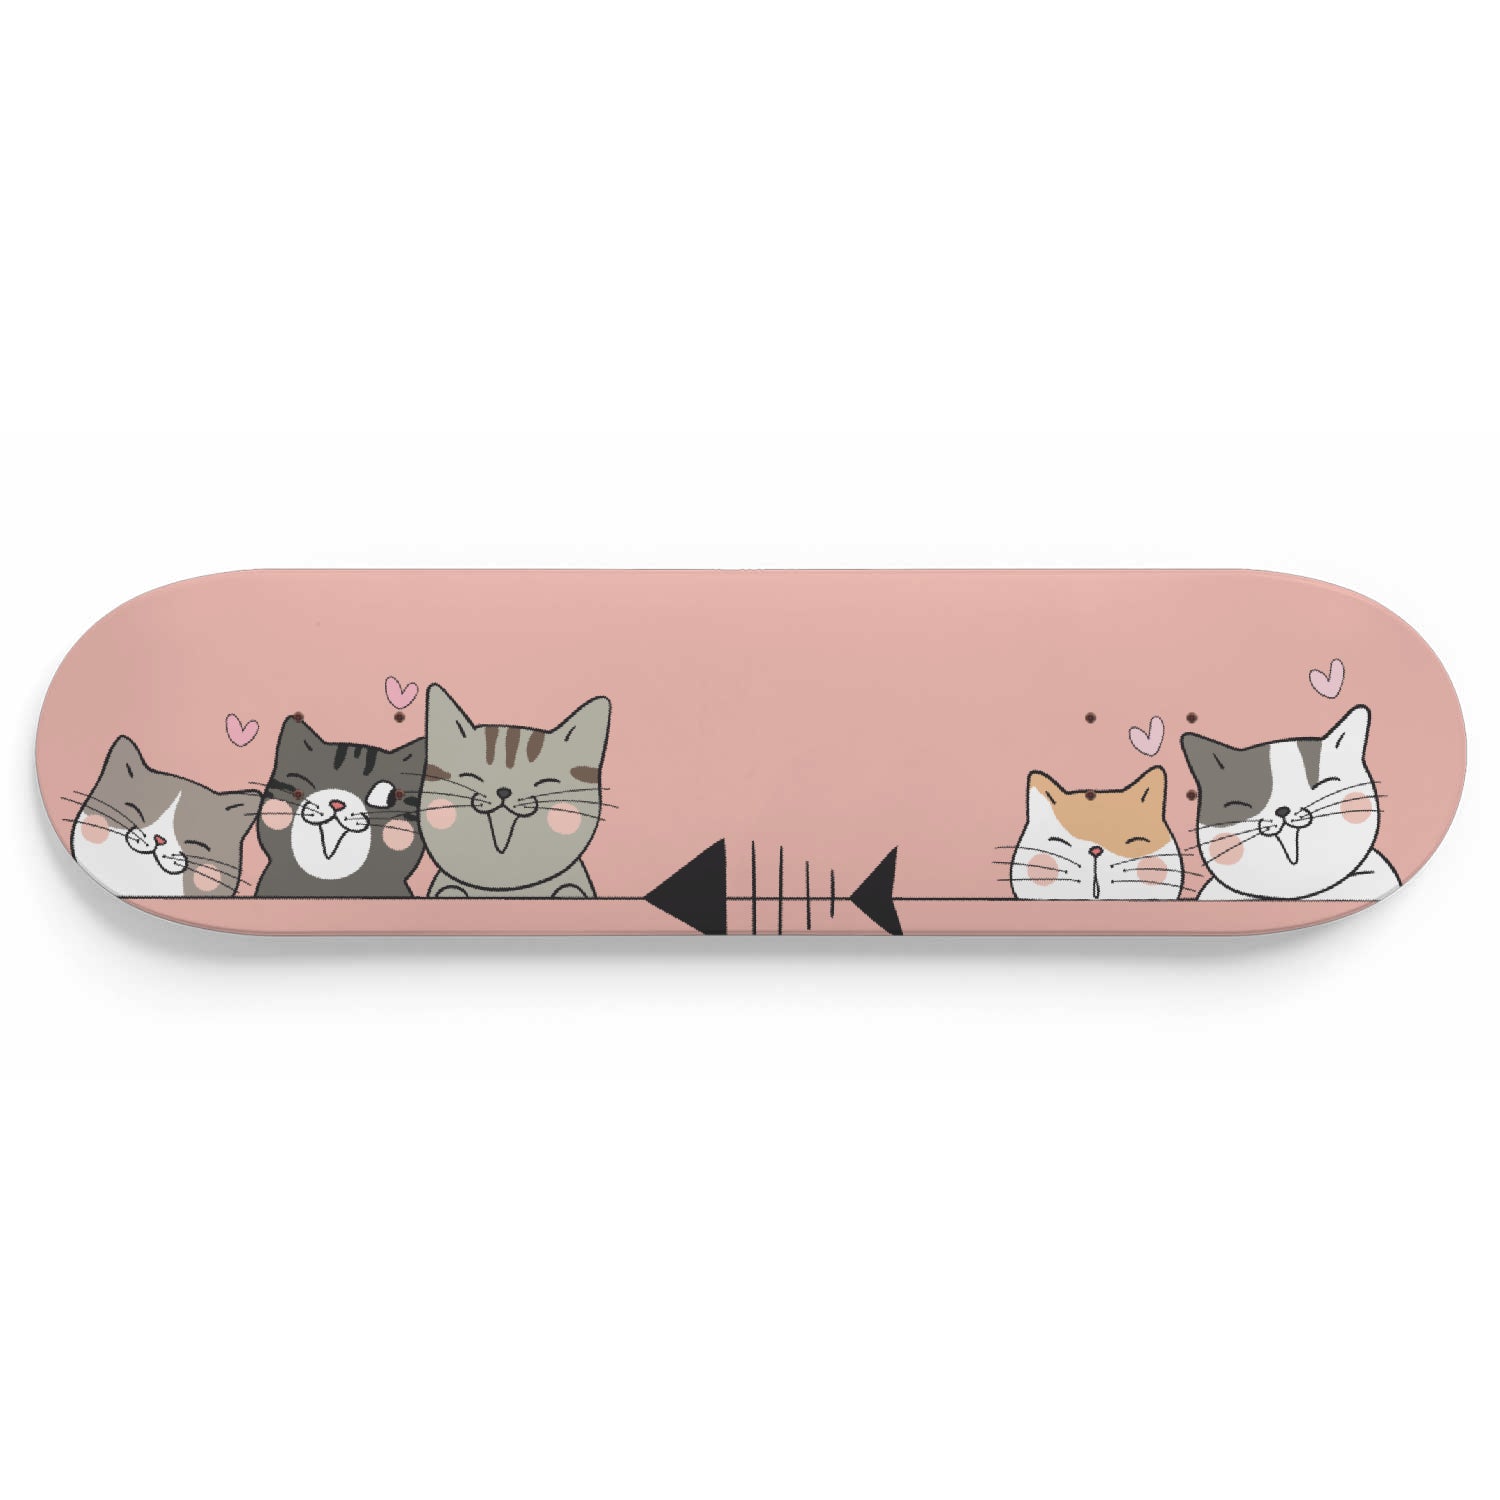 Set of Different Cute Cartoon Cats - Skateboard Wall Art